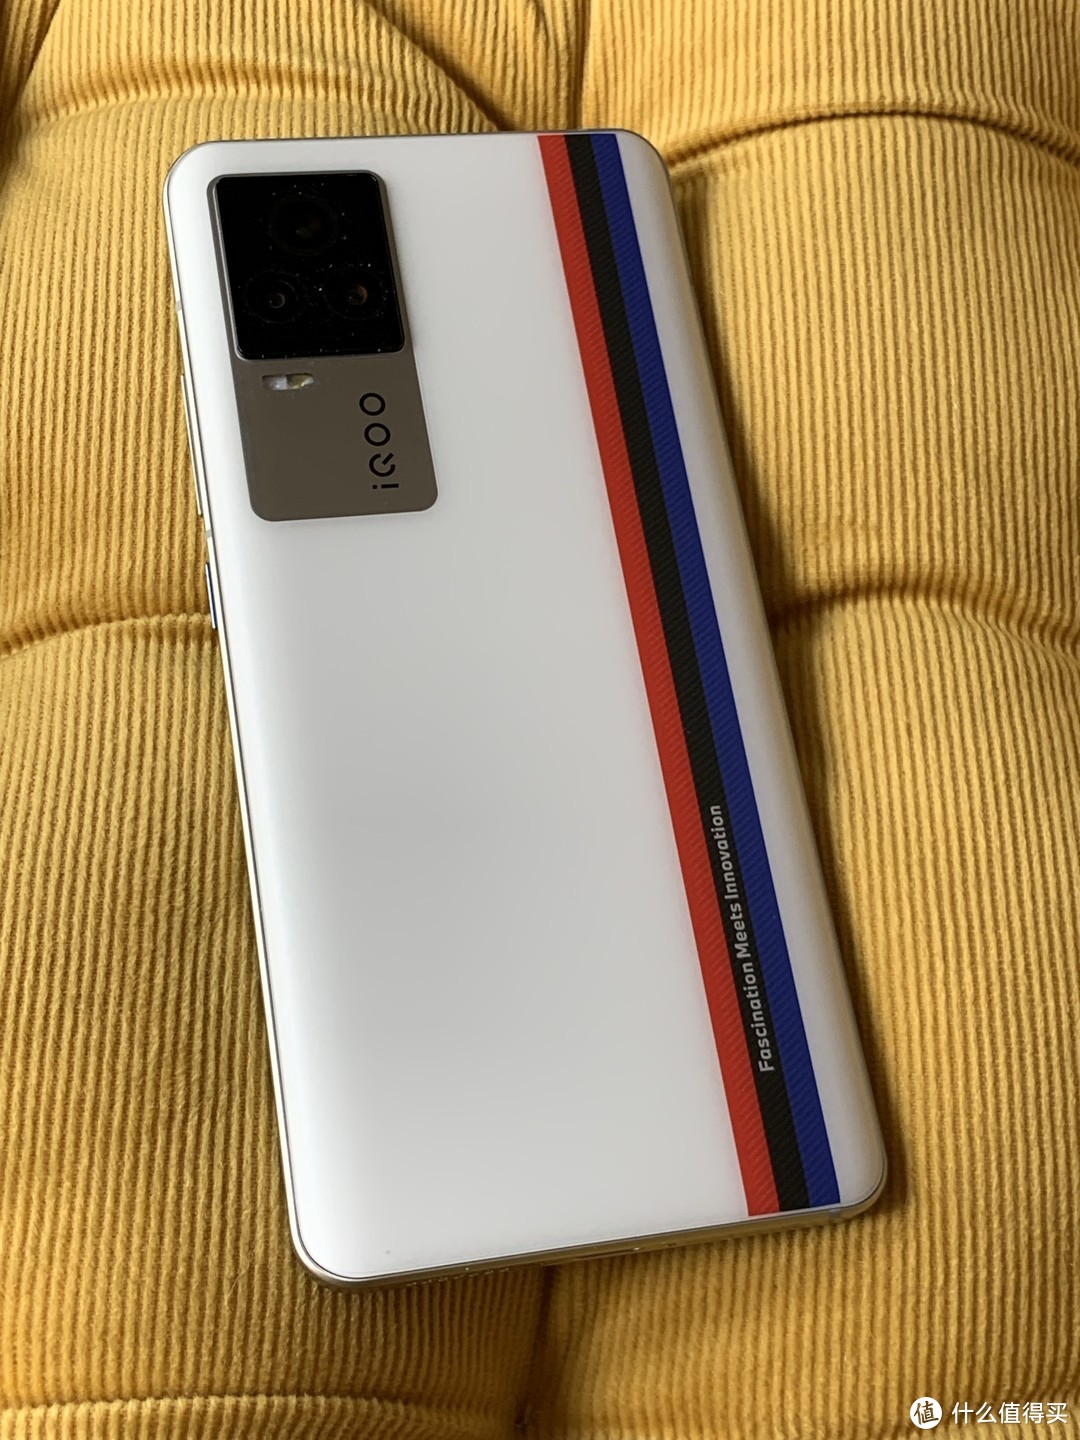 分享一下我的第一款iqoo手机！